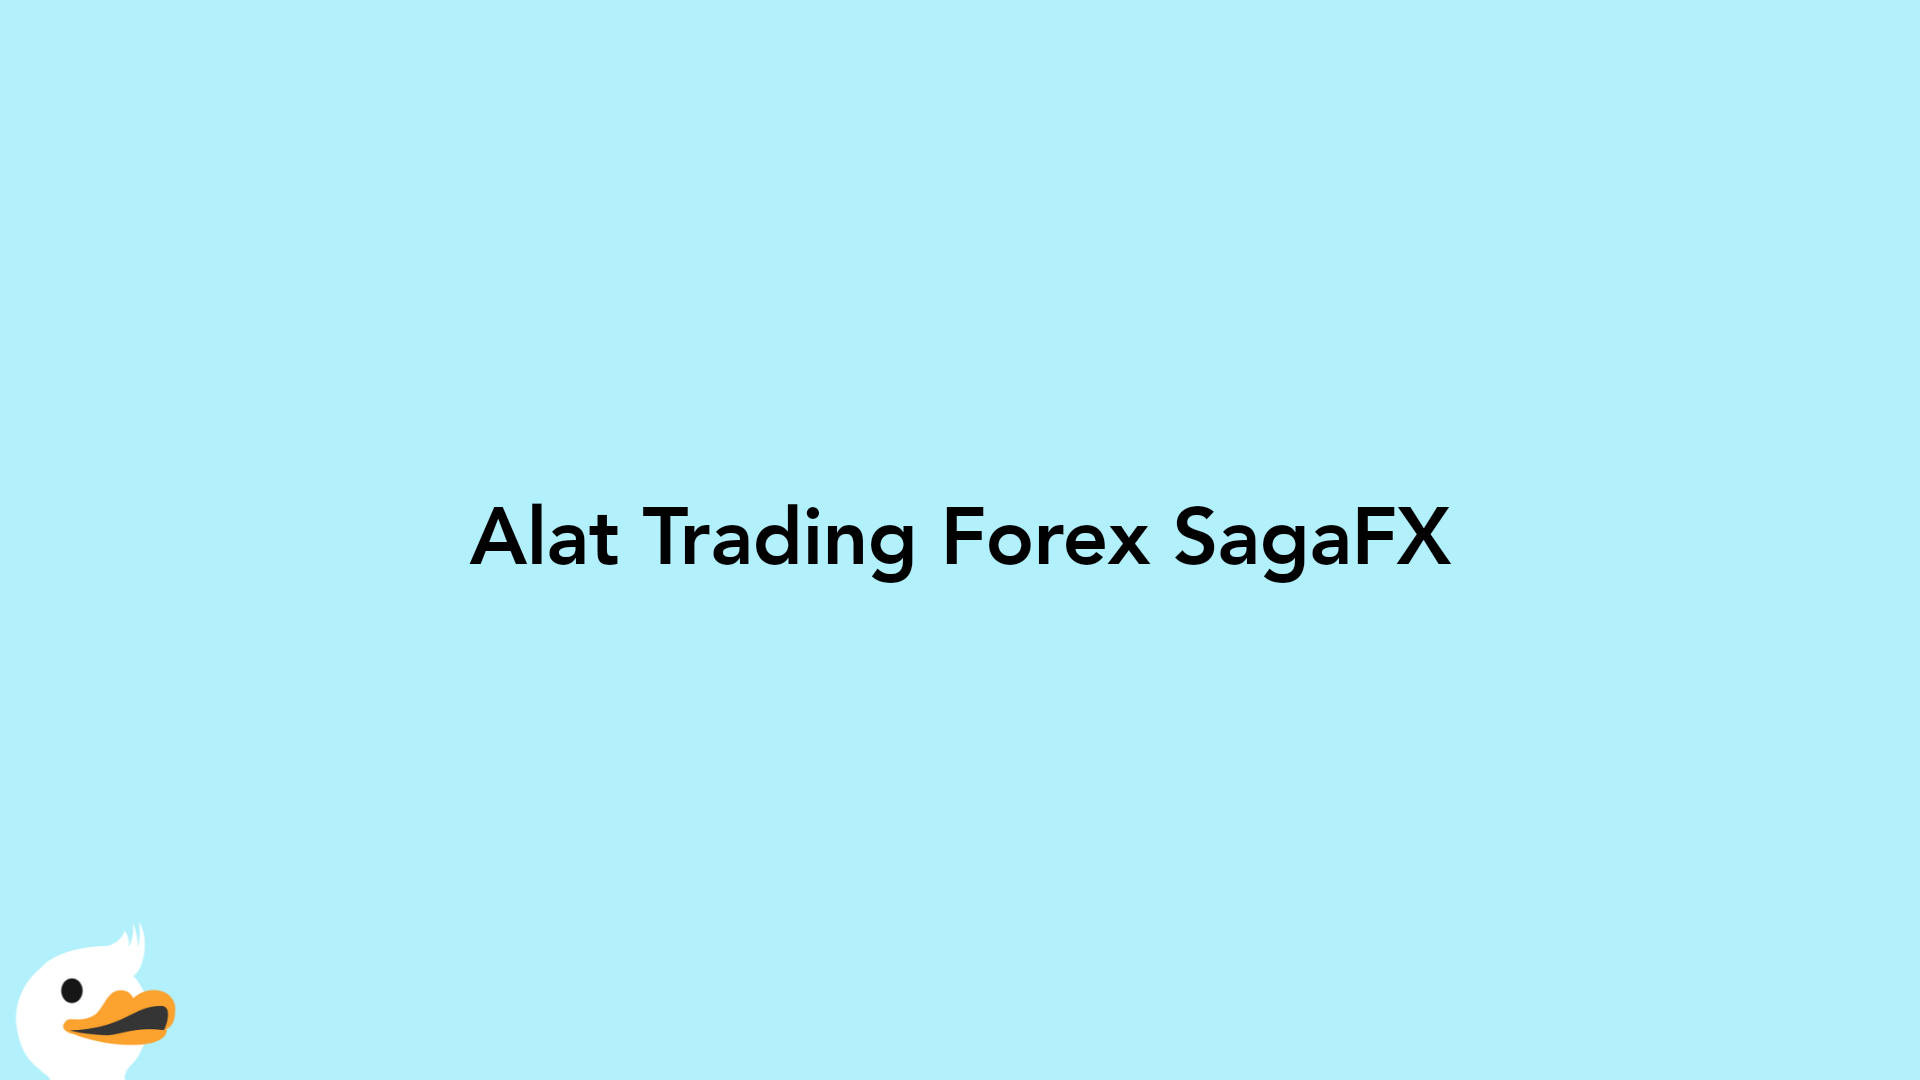 Alat Trading Forex SagaFX